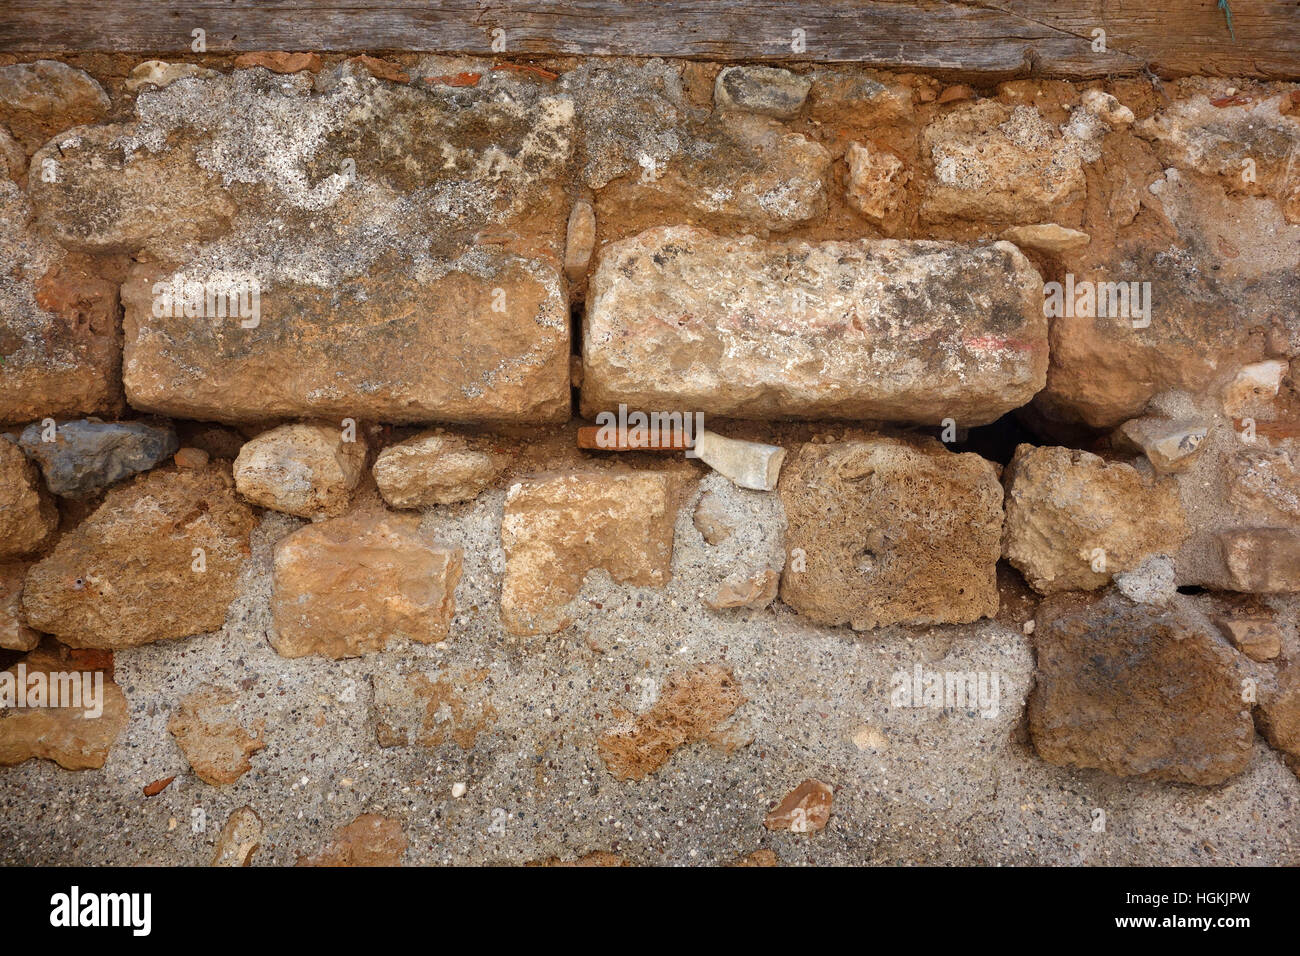 La texture du mur de pierre, rock wall background Banque D'Images